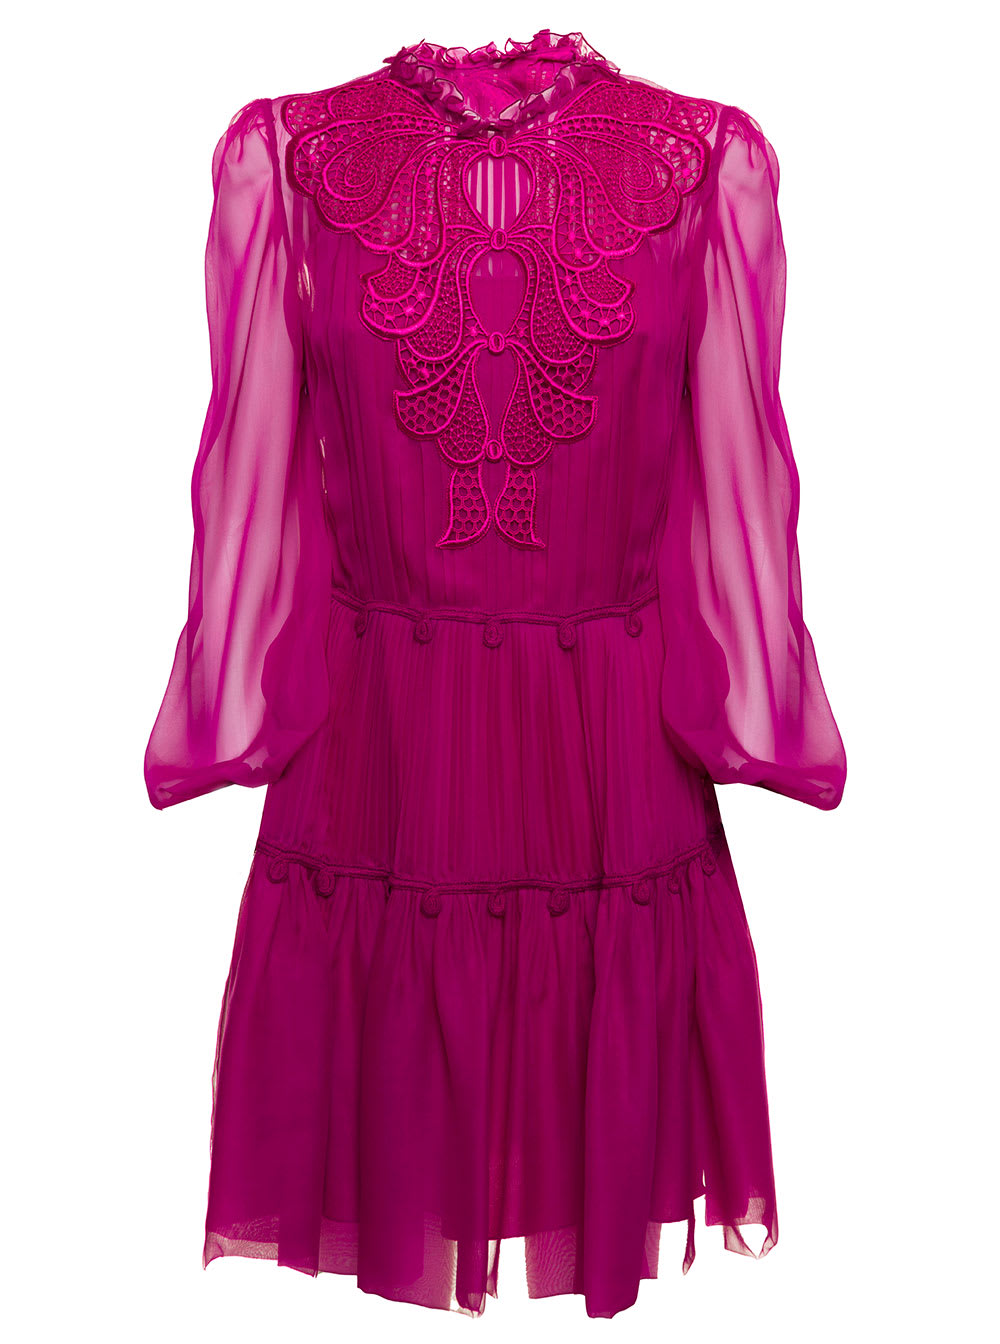 Alberta Ferretti Womans Pink Chiffon Dress With Embroidery